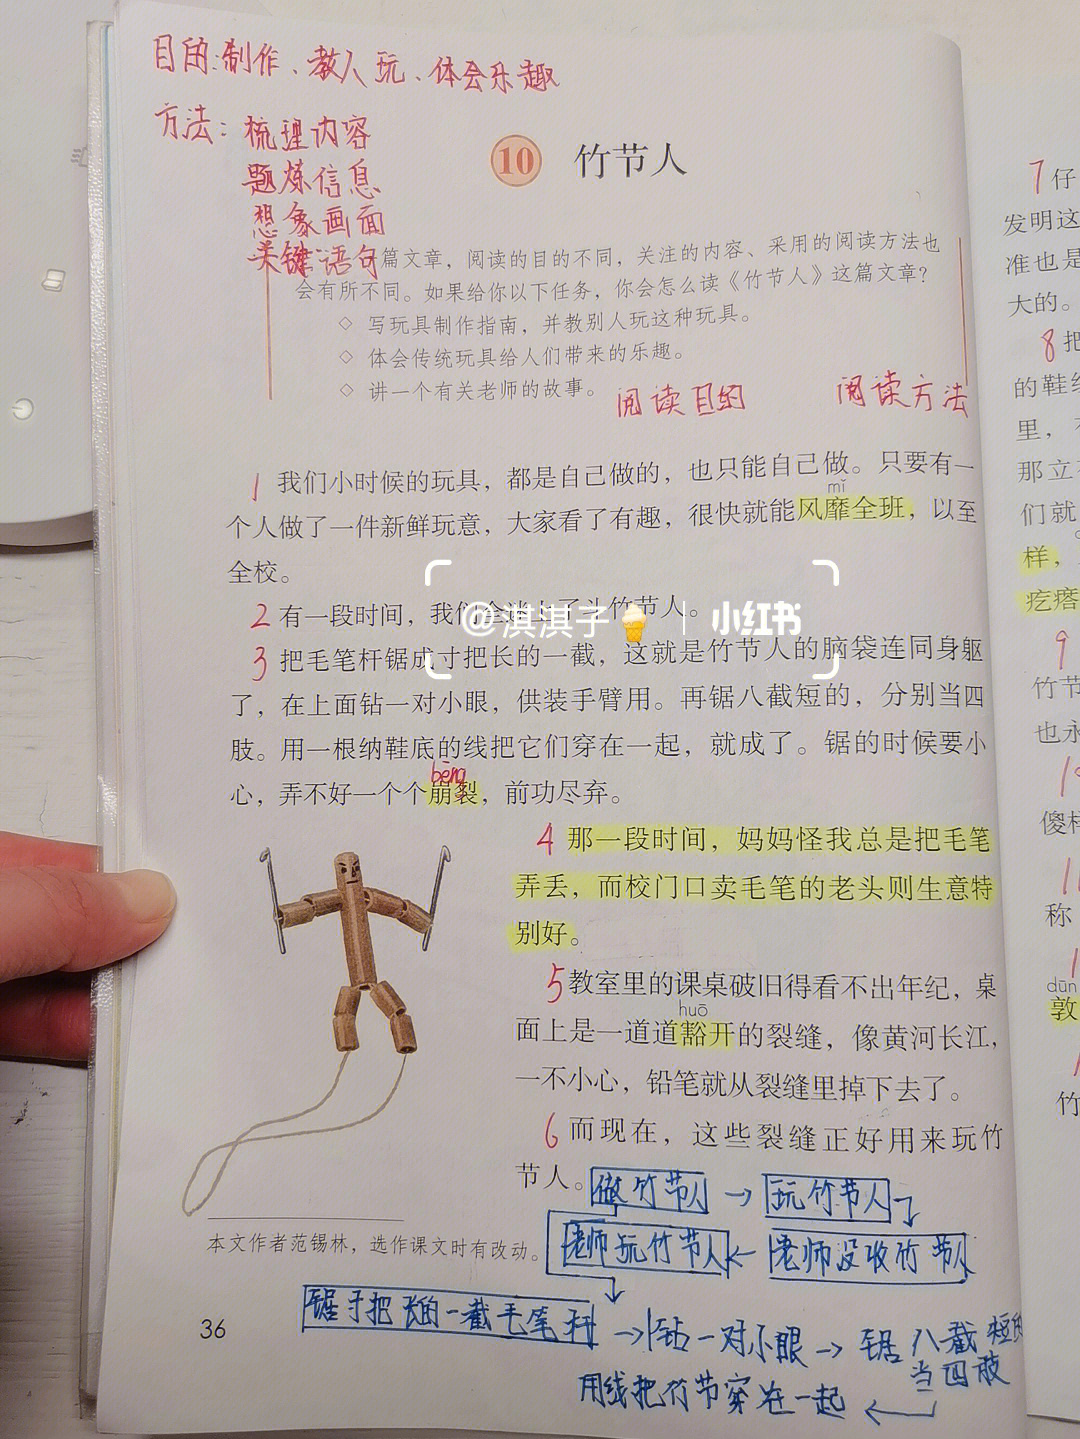 10.竹节人笔记图片